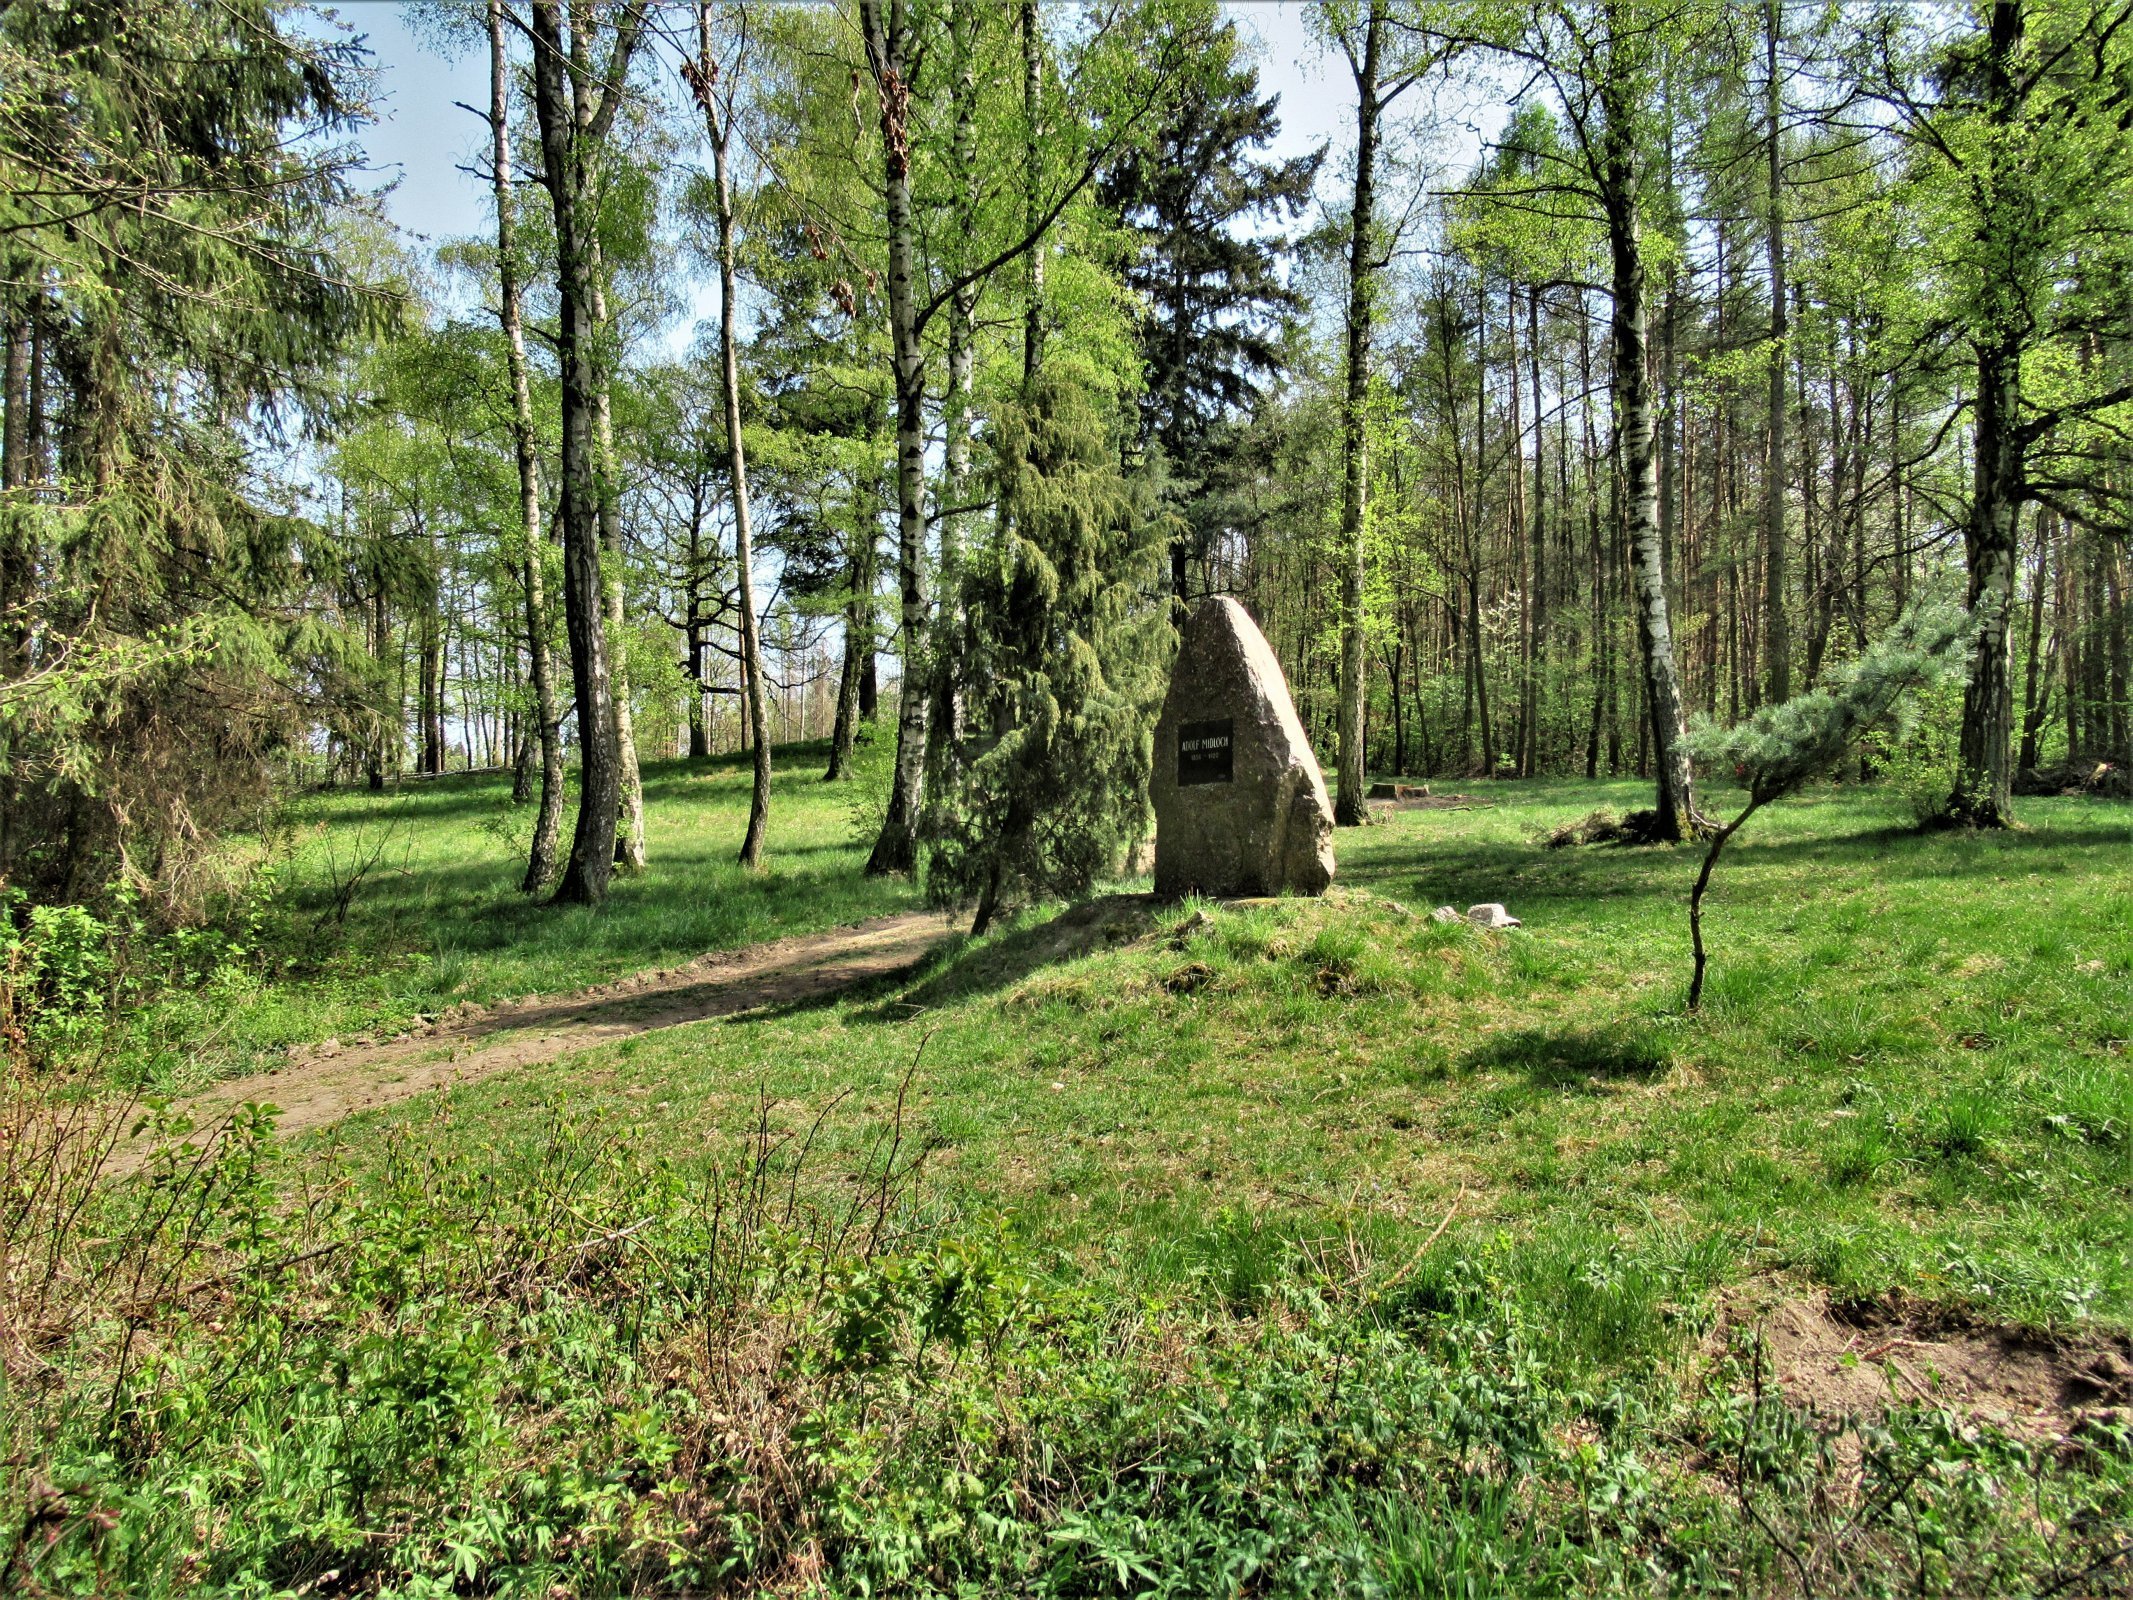 Pomník se nachází uprostřed palouku